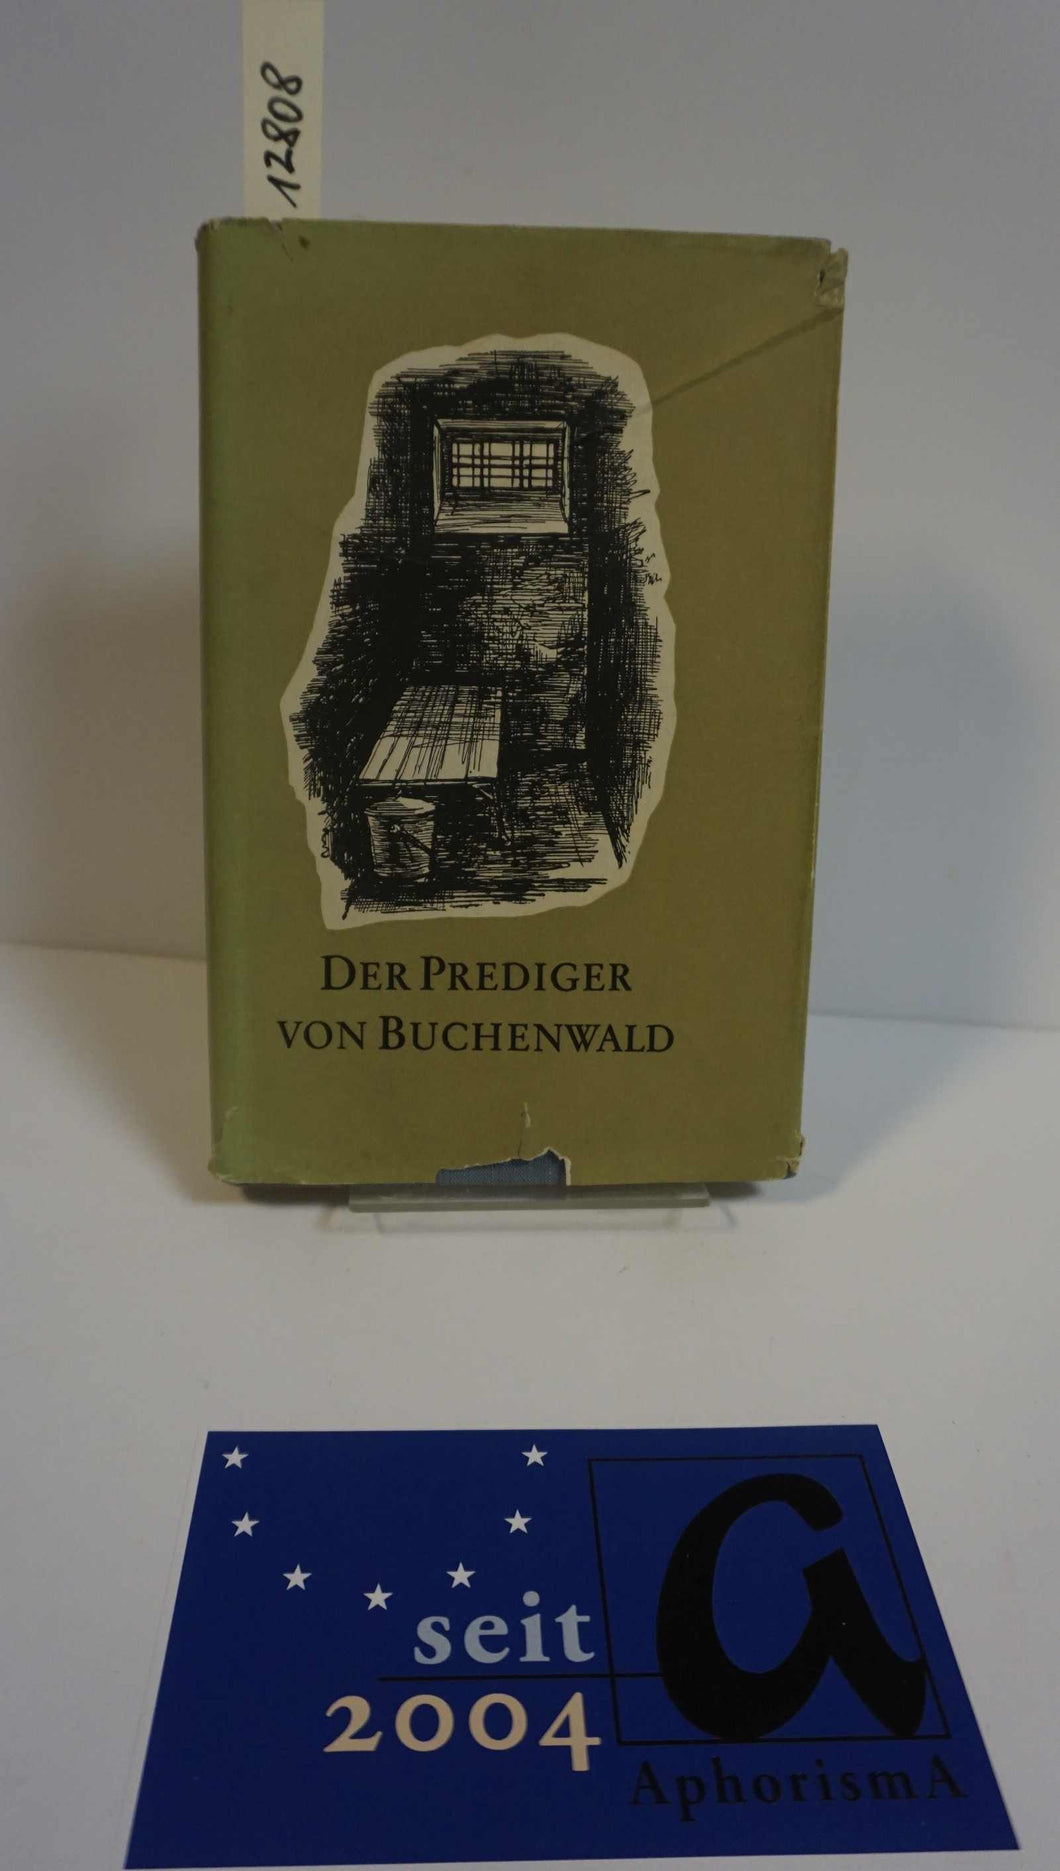 Der Prediger von Buchenwald